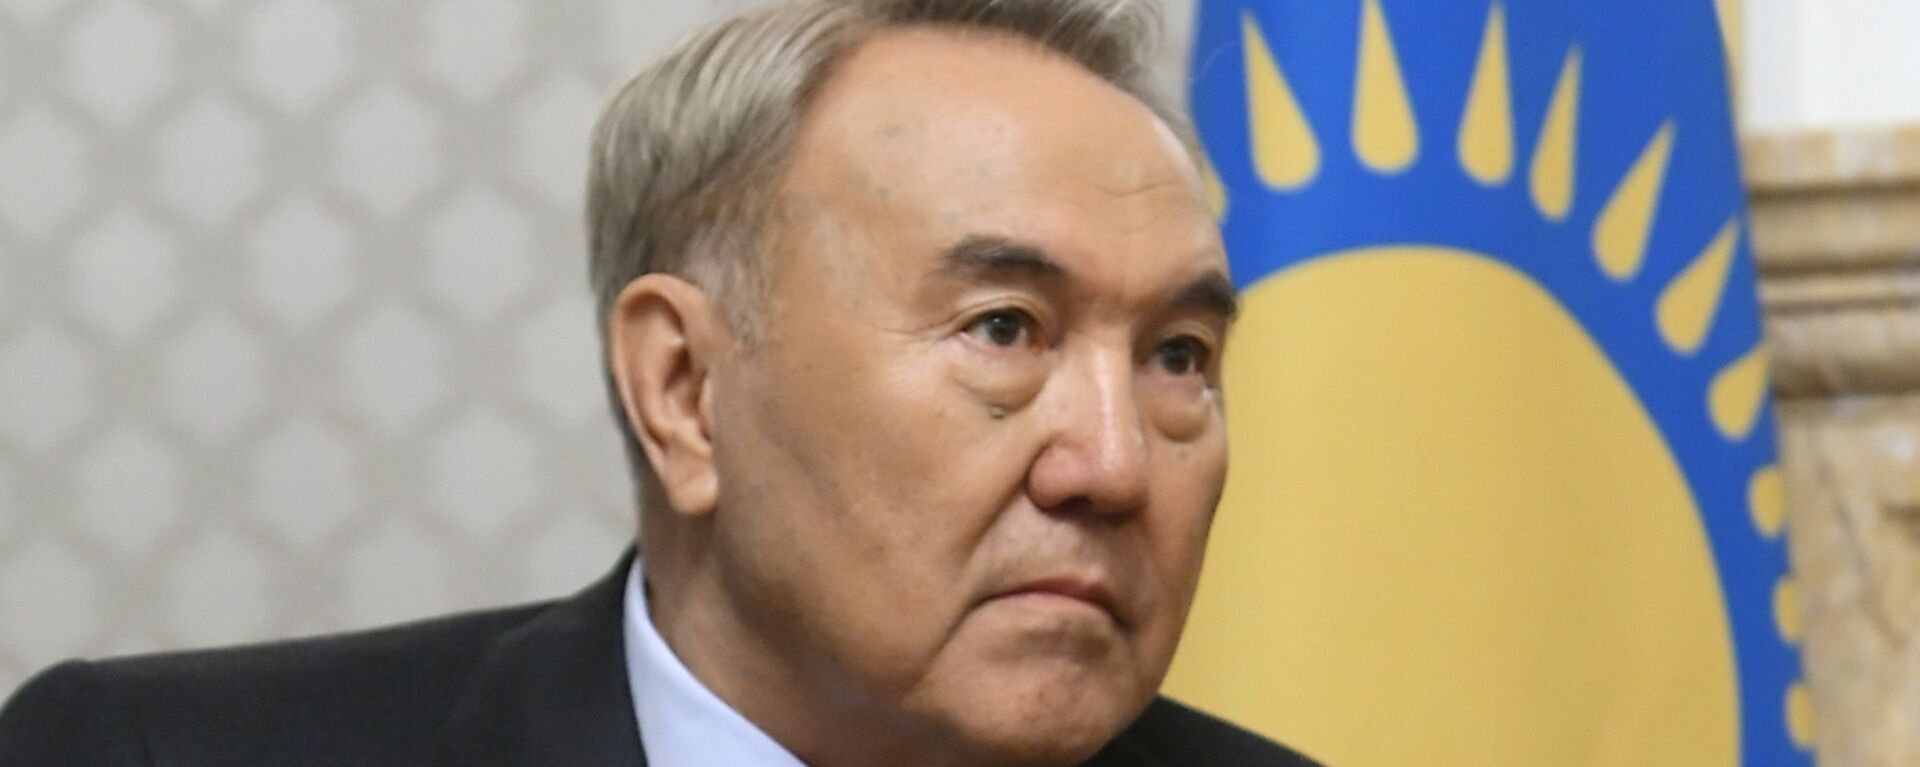 El expresidente de Kazajistán Nursultán Nazarbáev - Sputnik Mundo, 1920, 18.01.2022